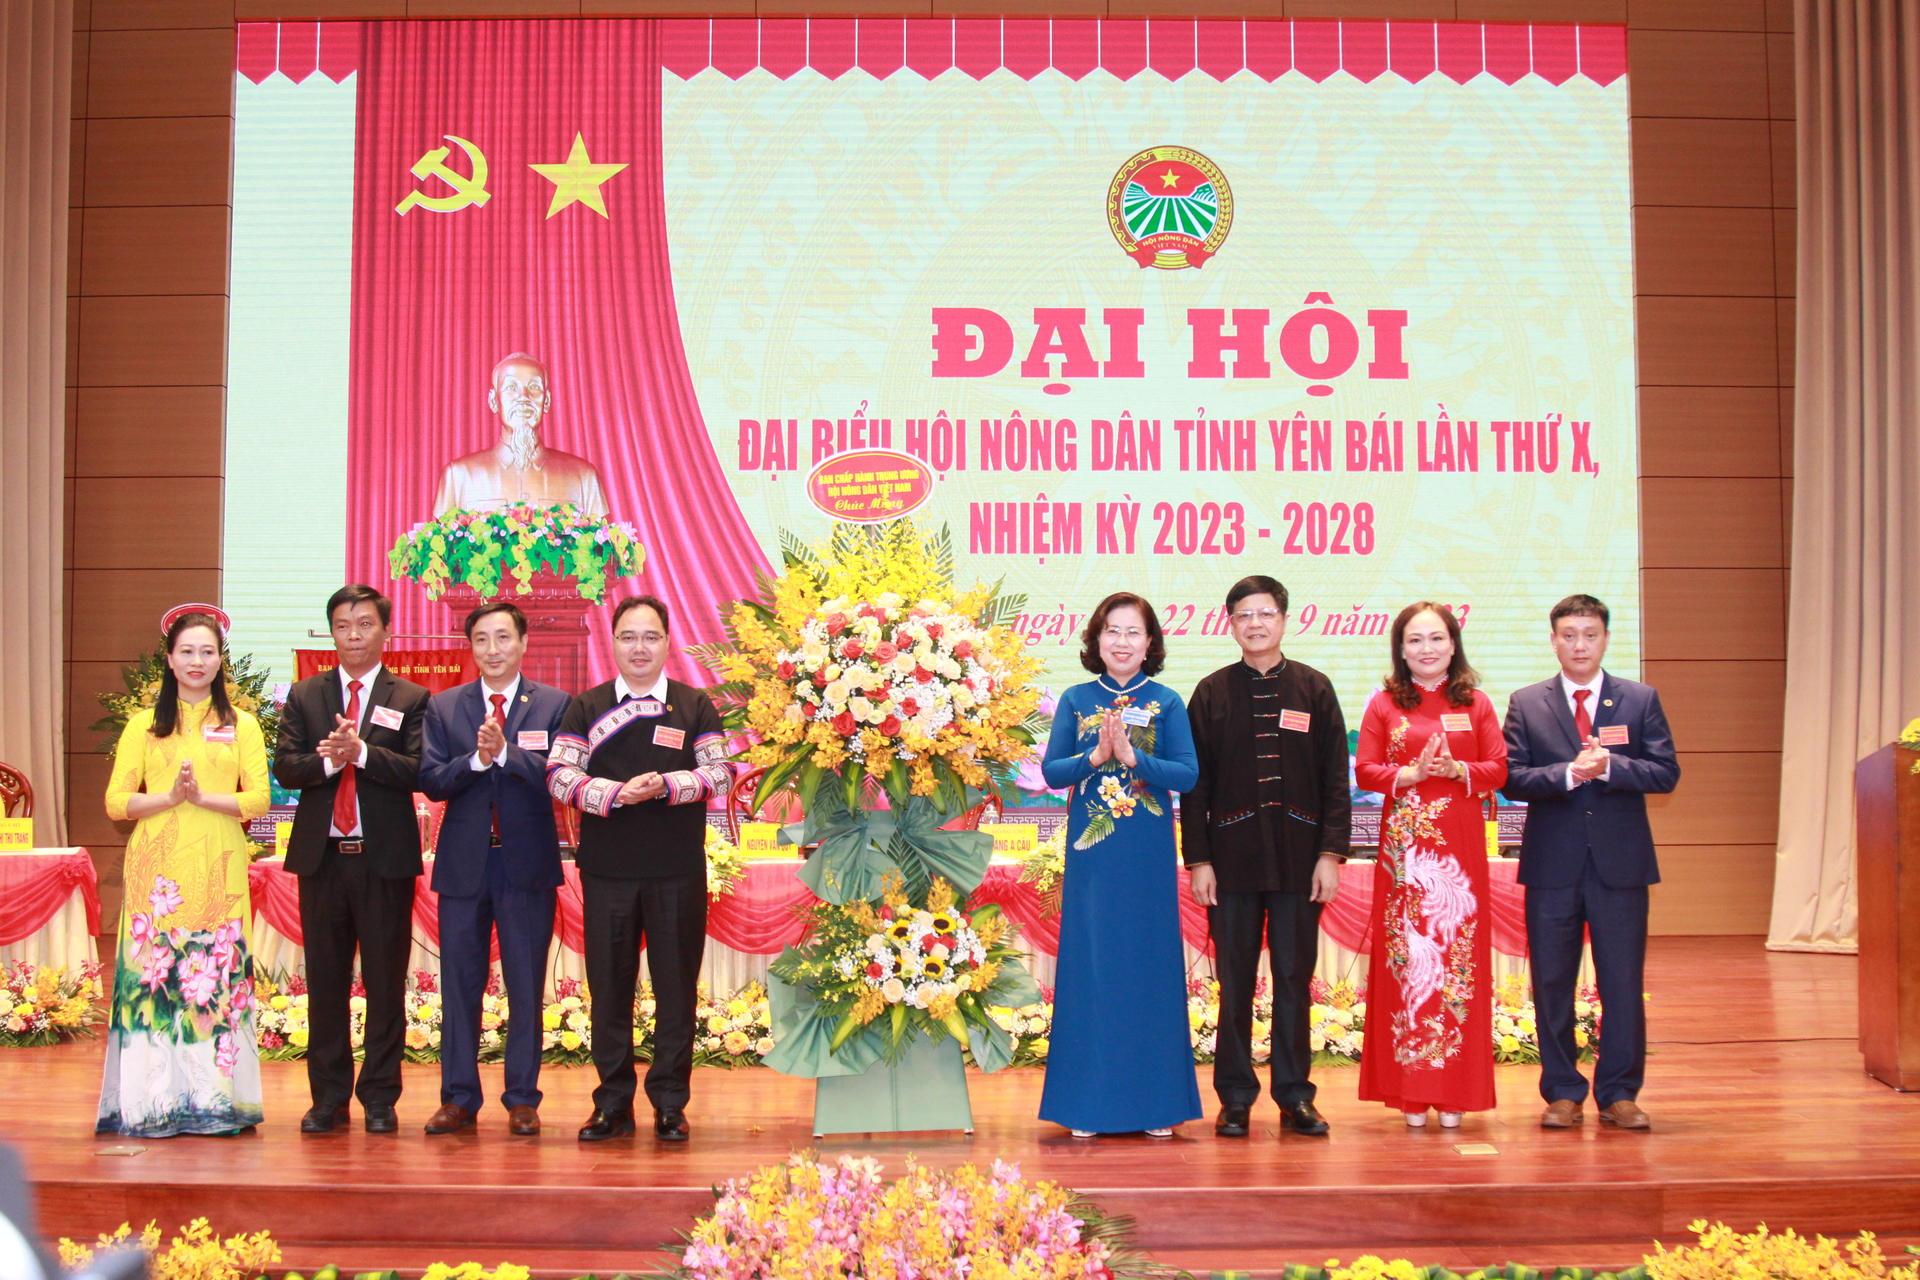 Phó Chủ tịch Trung ương Hội Nông dân Việt Nam Bùi Thị Thơm tặng hoa chúc mừng thành công đại hội. Ảnh: Thanh Tiến.